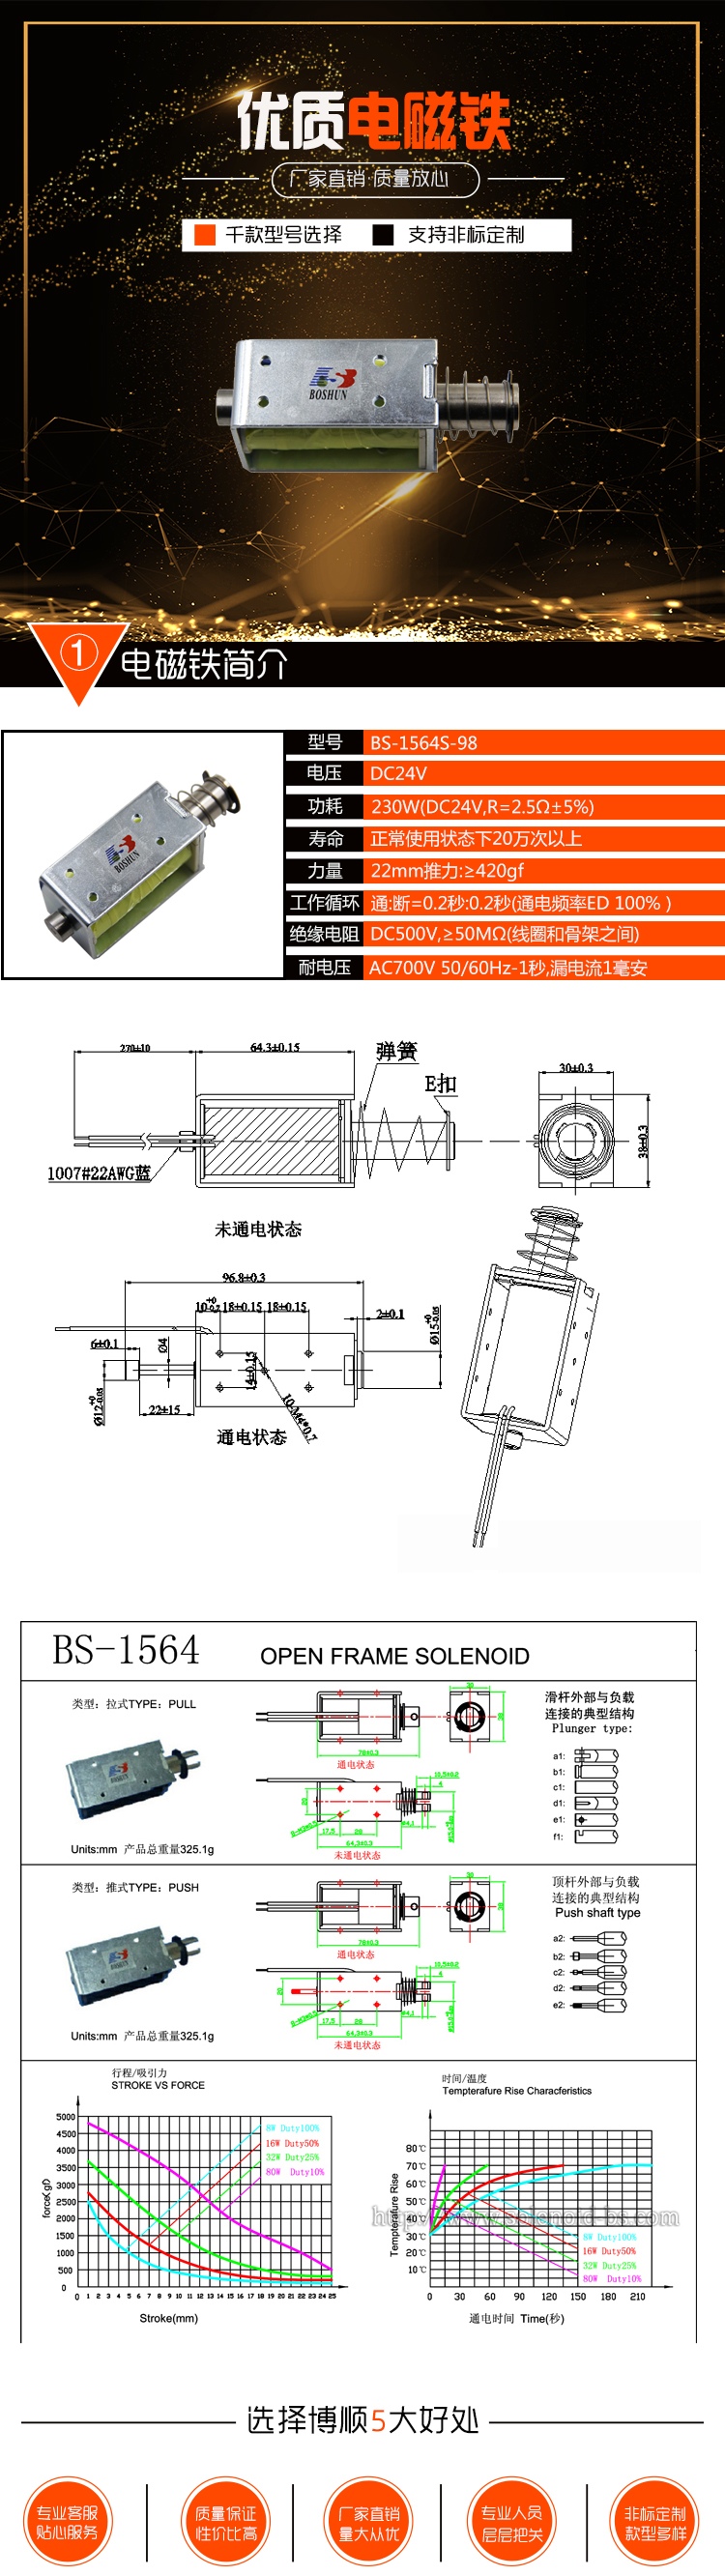 高压配电柜电磁铁 BS-1564S-98